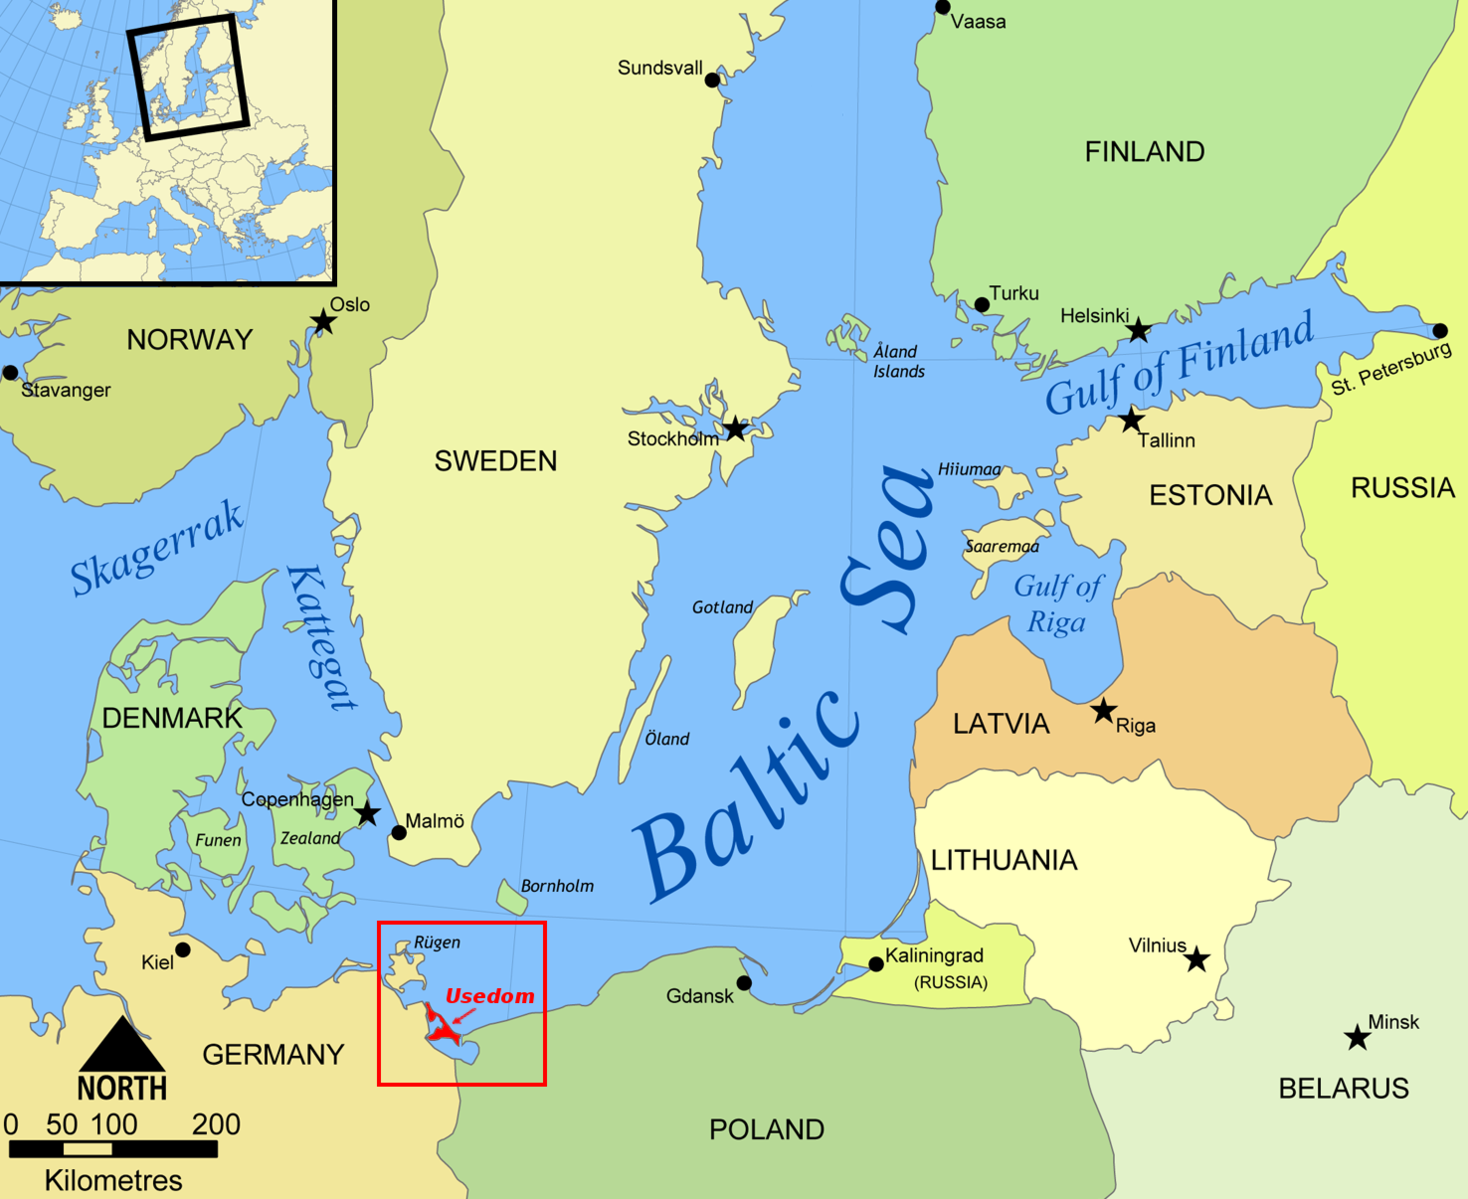 Остров Рюген в Балтийском море на карте. Остров Рюген в Балтийском море. О Рюген на карте Европы. Балтийское море на карте Европы. Карта балтийского моря с городами